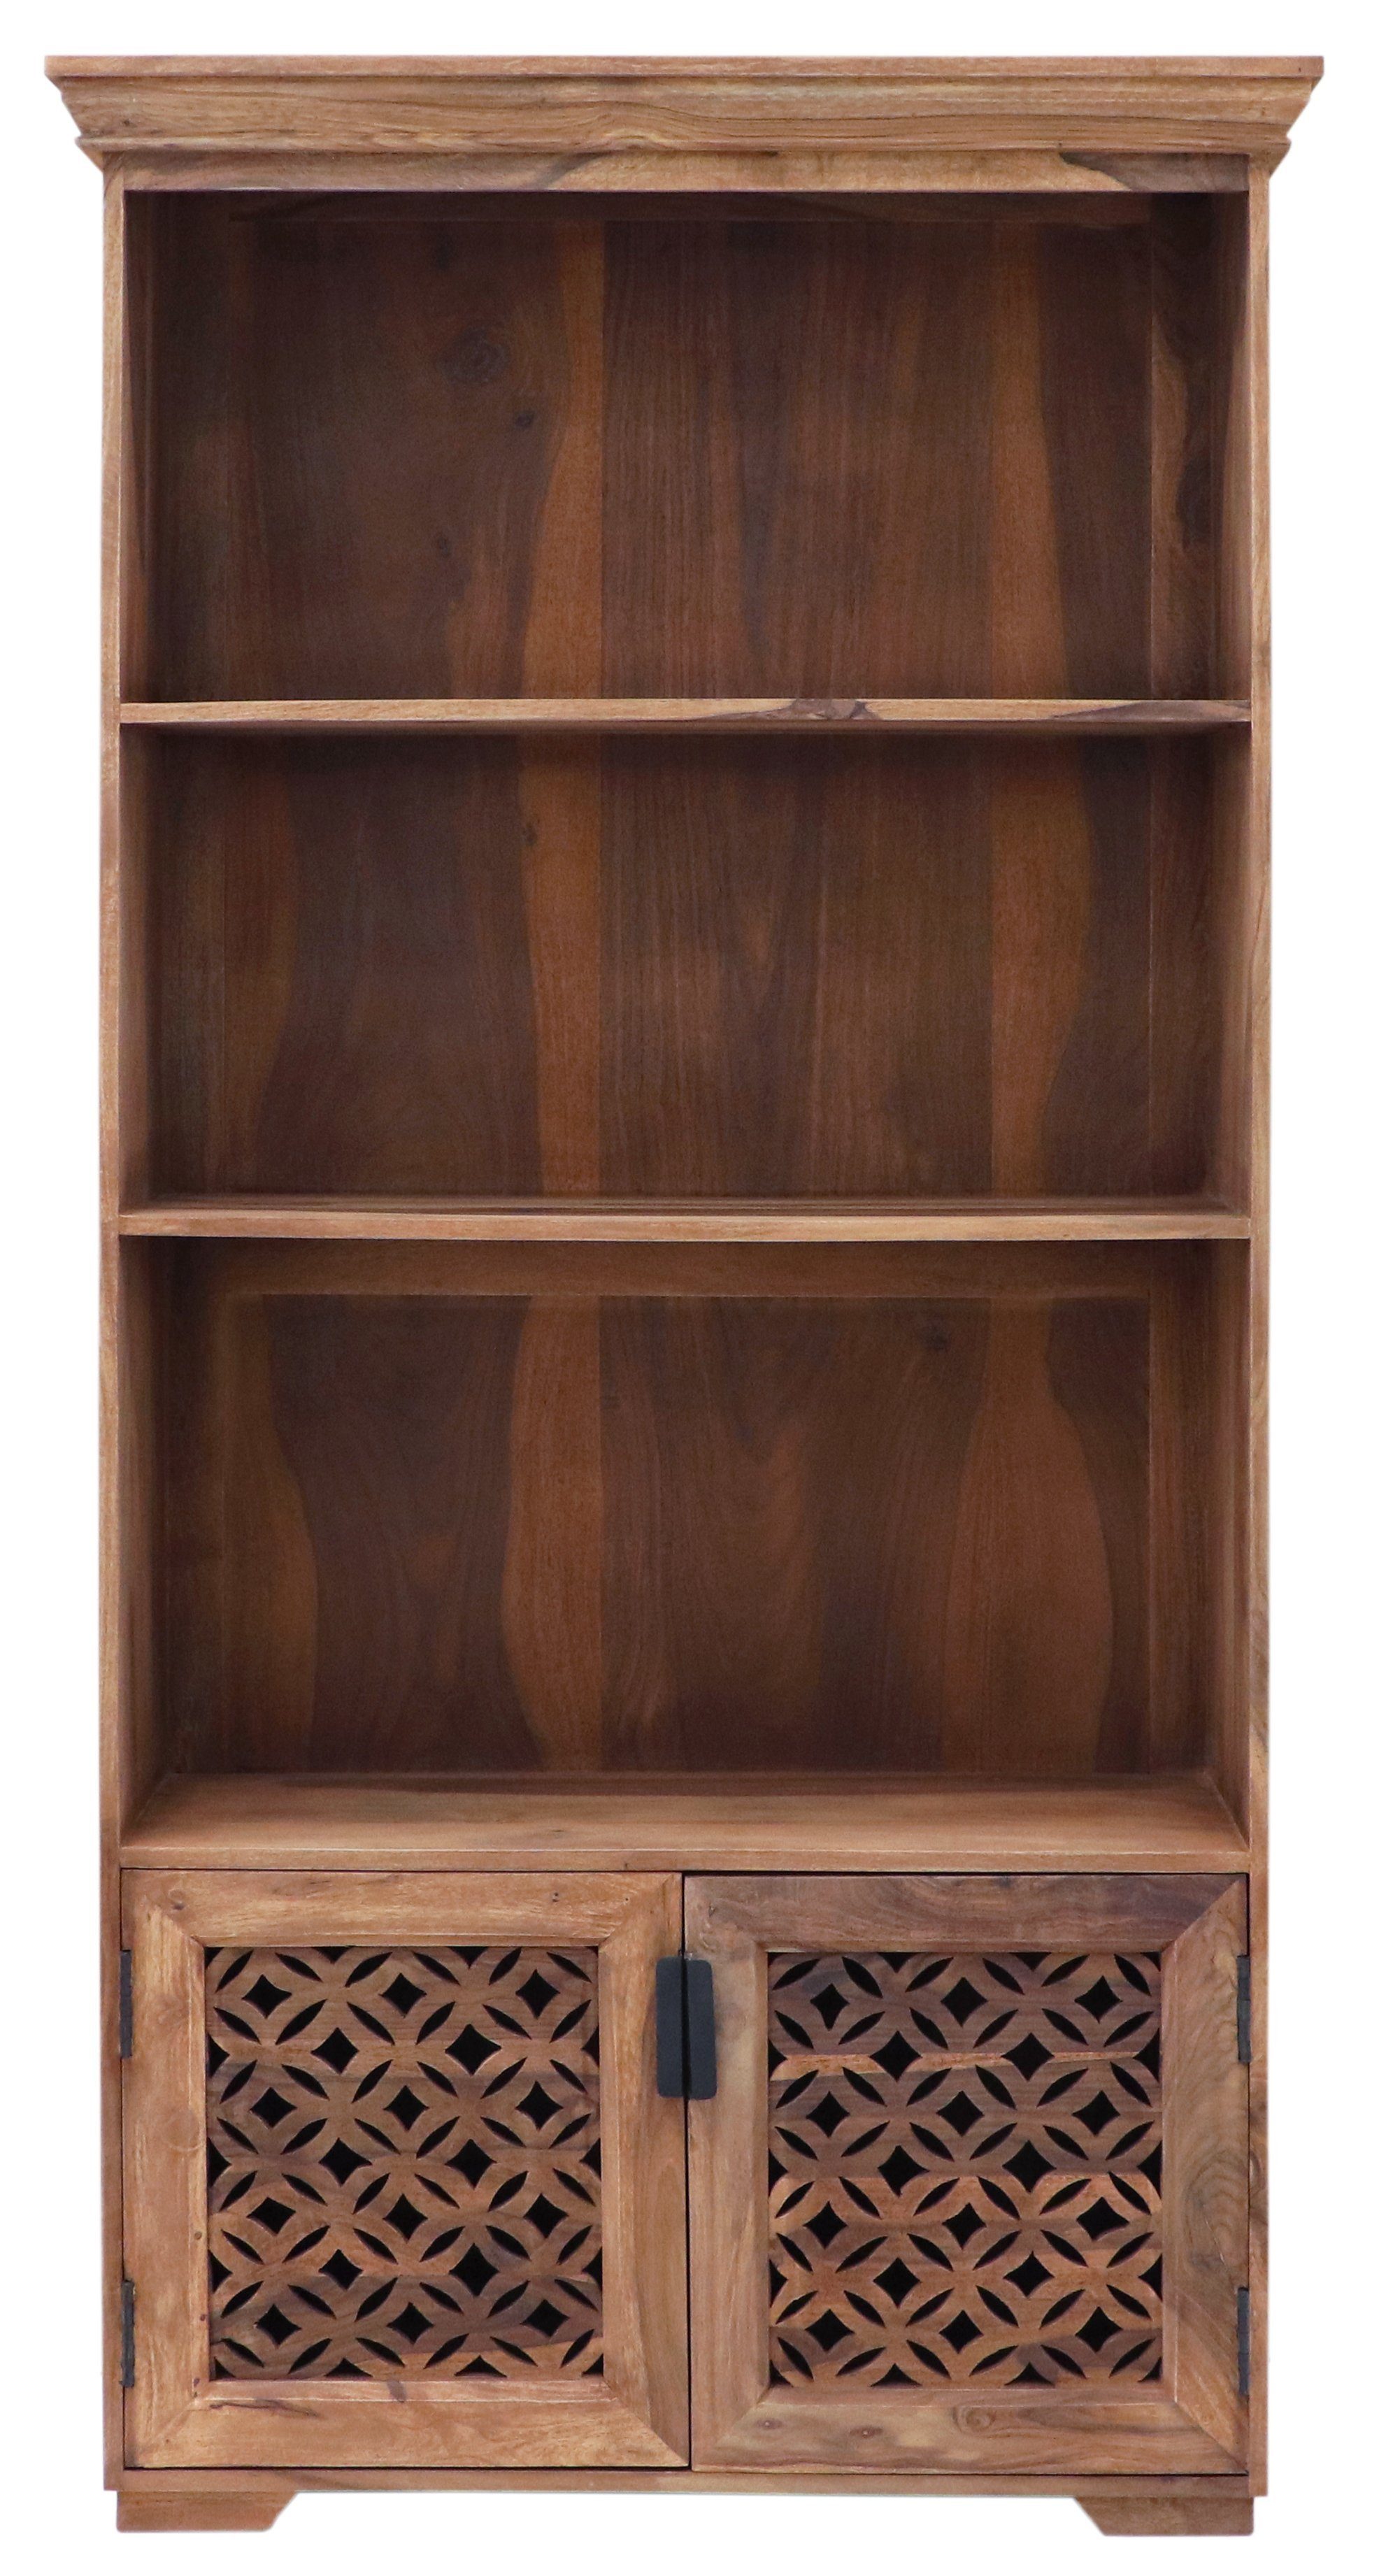 Mira indischem Bücherregal Sheesham-Massivholz aus 90x180x35 Indischesmoebelhausde Bücherregal